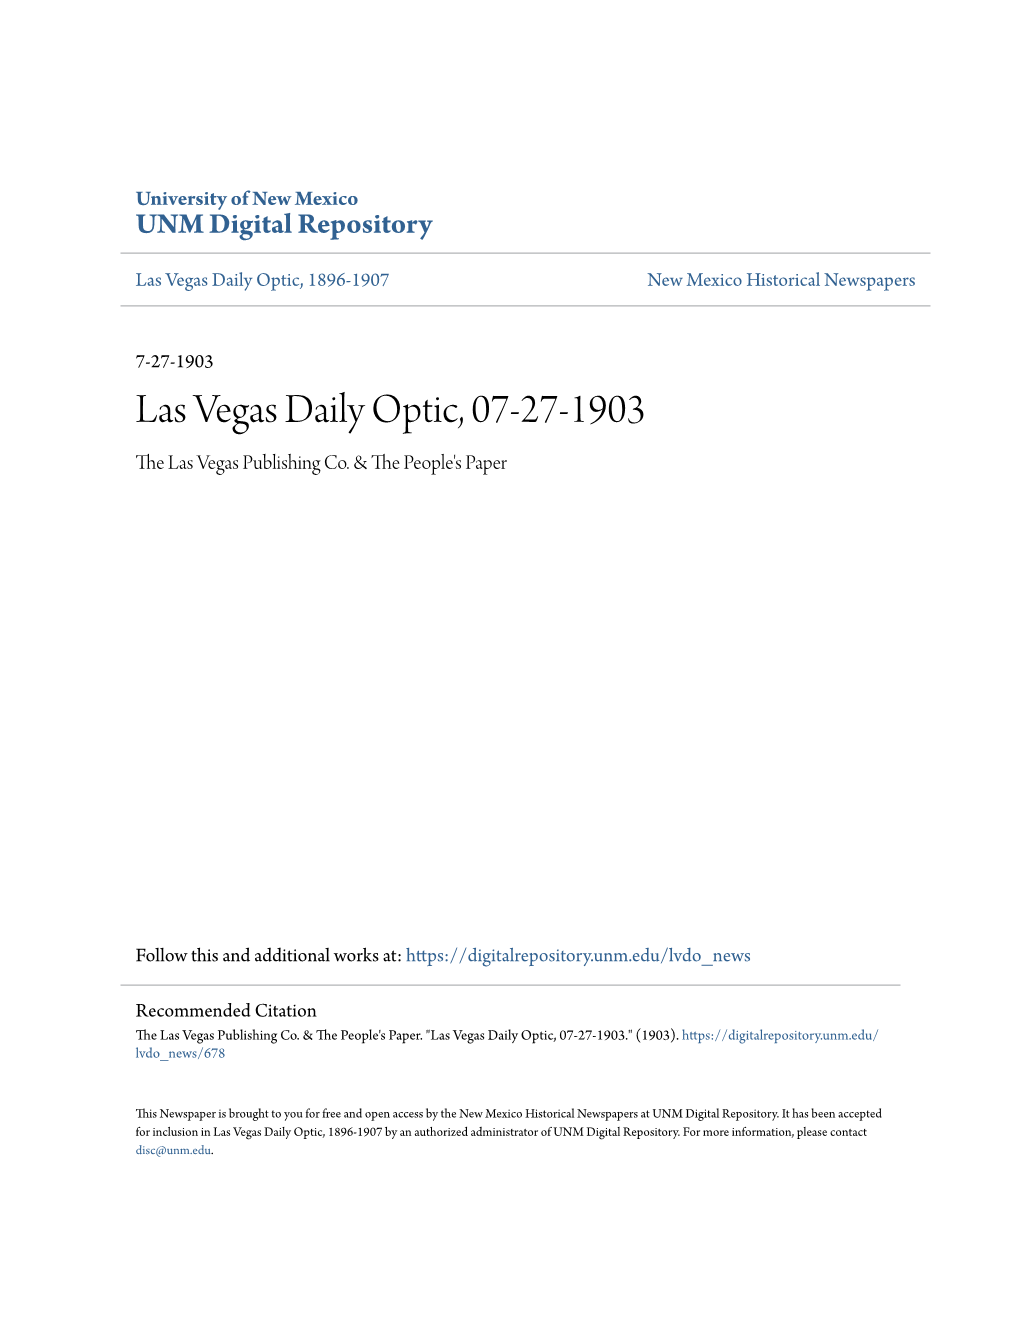 Las Vegas Daily Optic, 07-27-1903 the Las Vegas Publishing Co